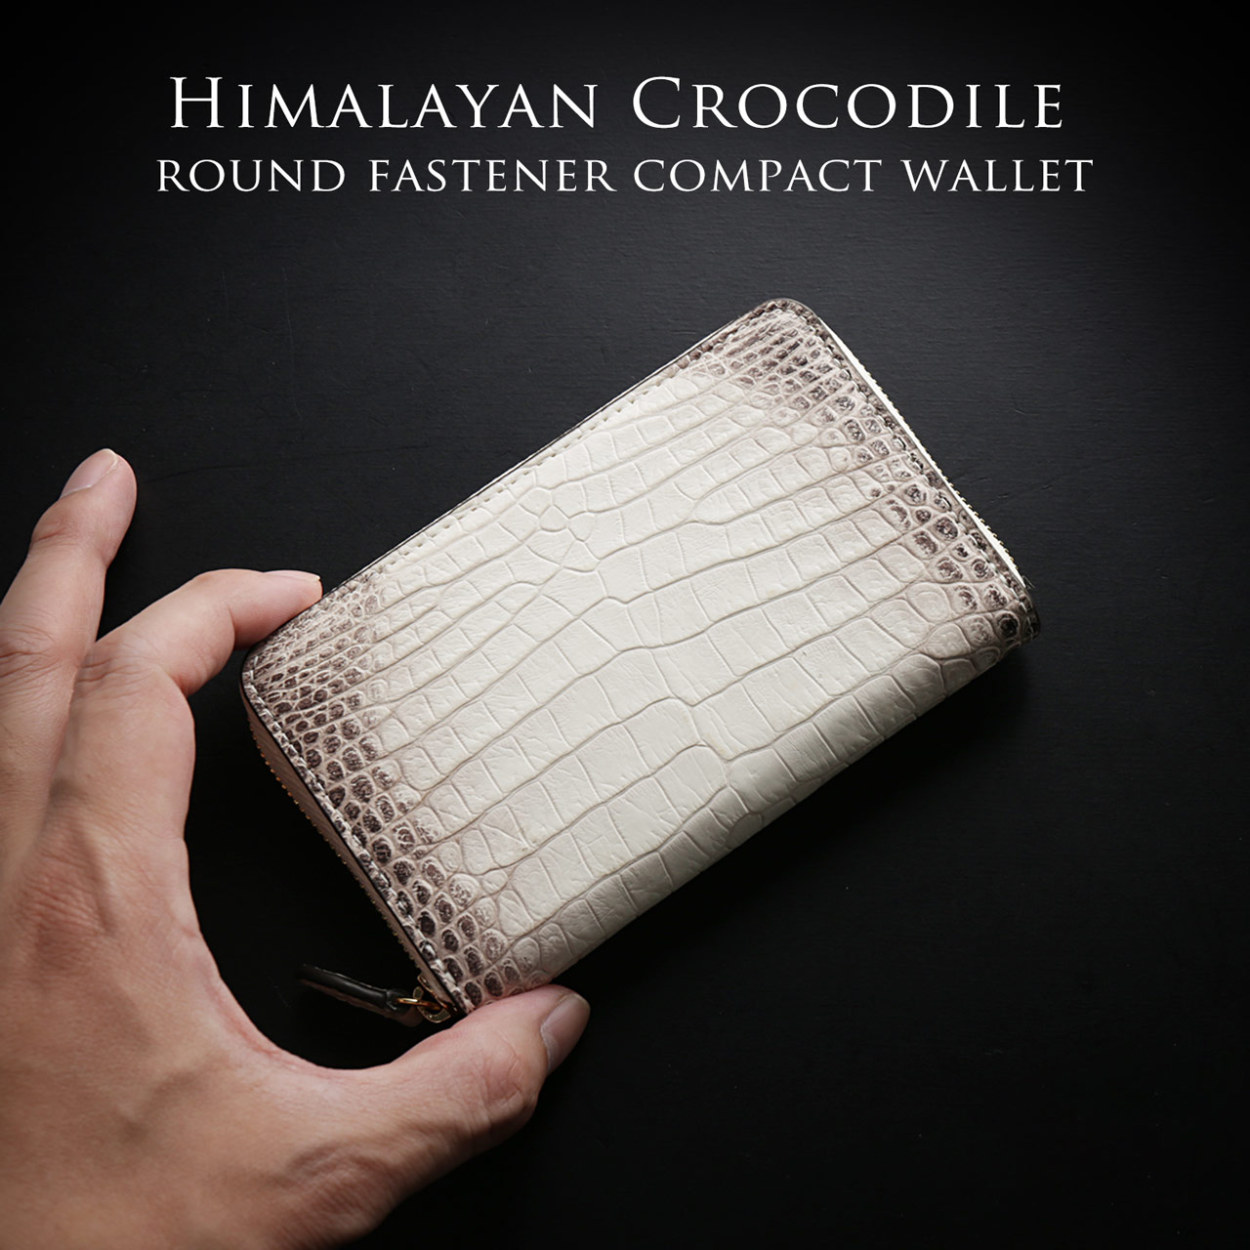 ヒマラヤクロコダイル ラウンドファスナー コンパクト 財布 マット 加工(06001557-mens-1r) バレンタイン